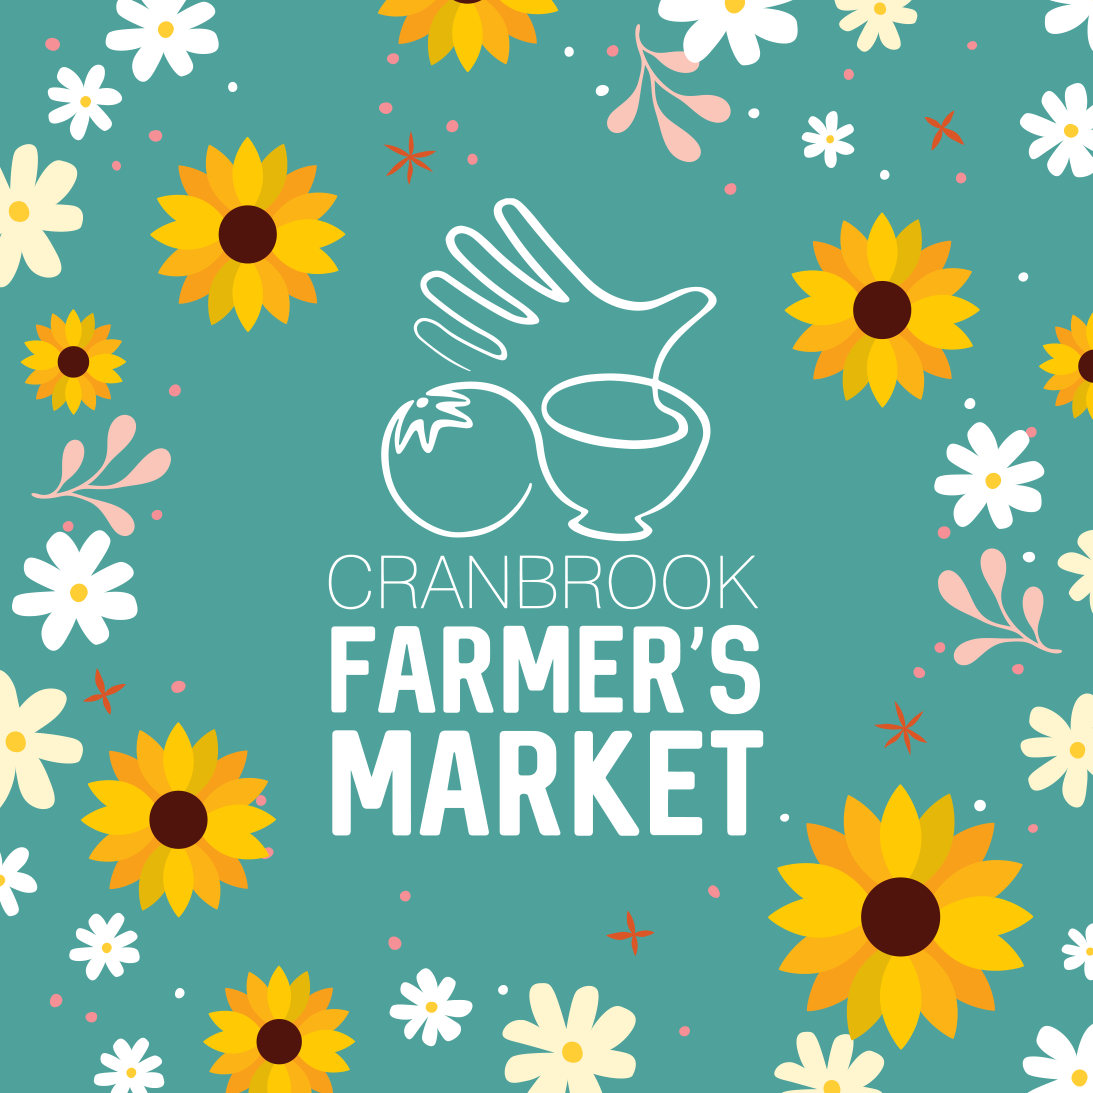 Cranbrook Farmers' Market